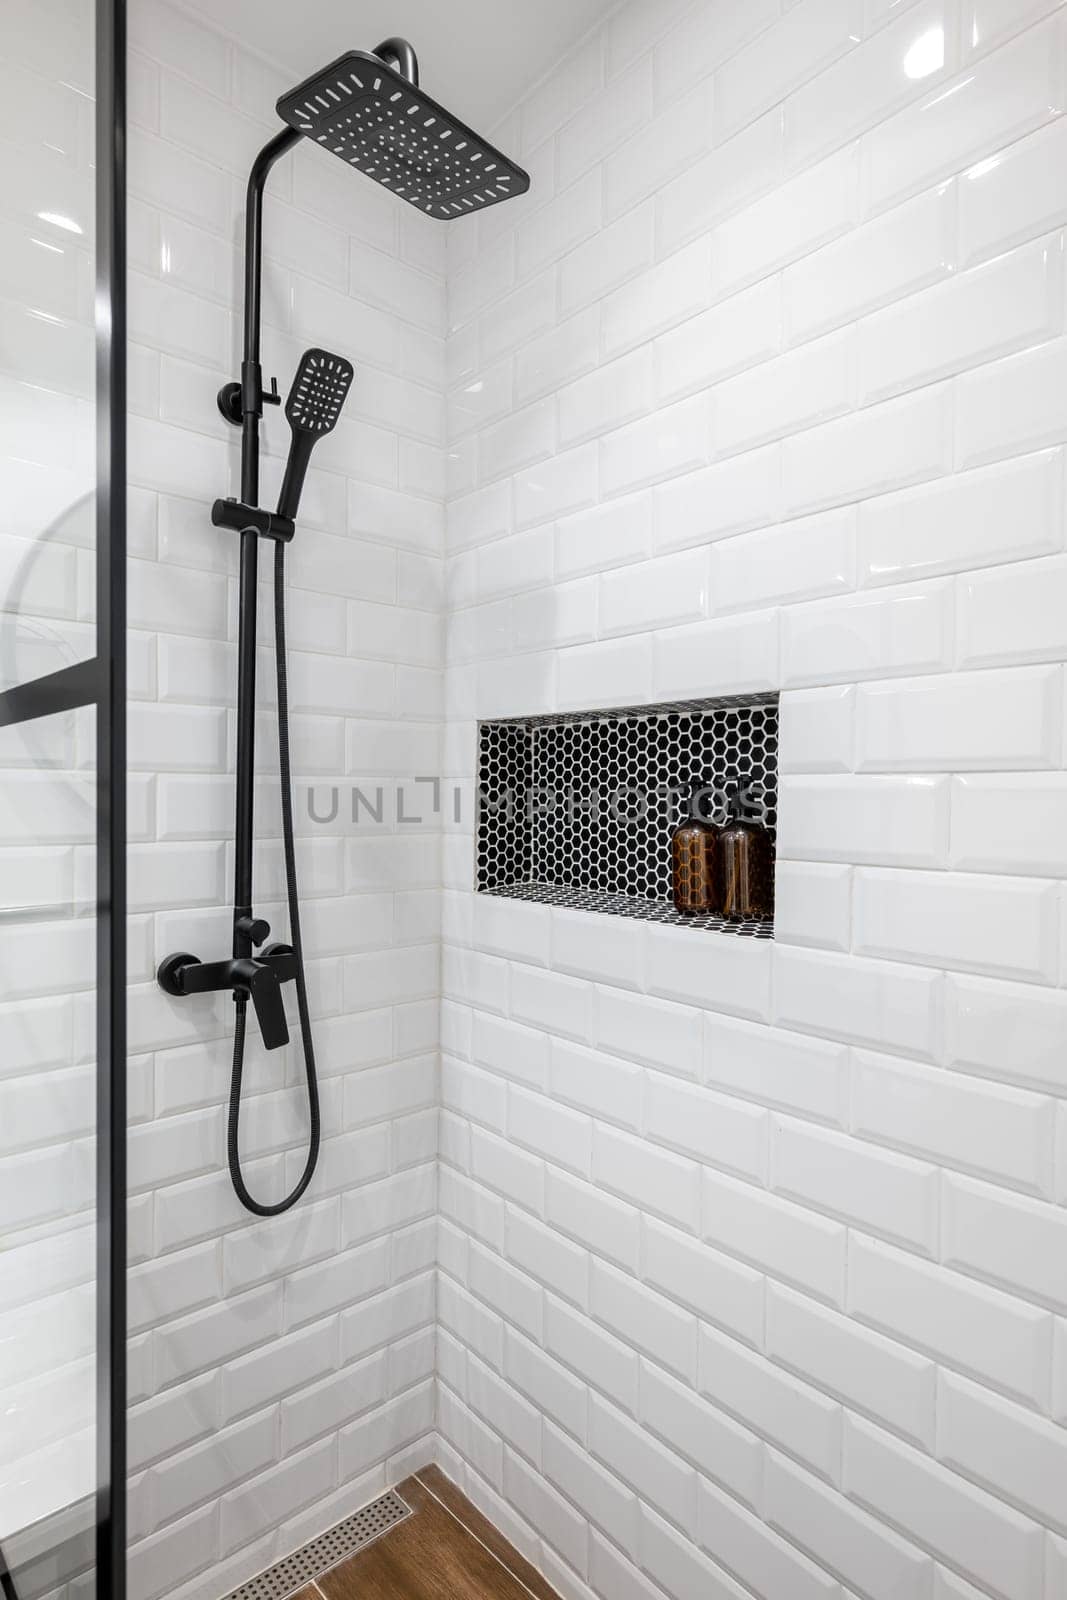 New black shower head on holder in white tiled bathroom in modern apartment